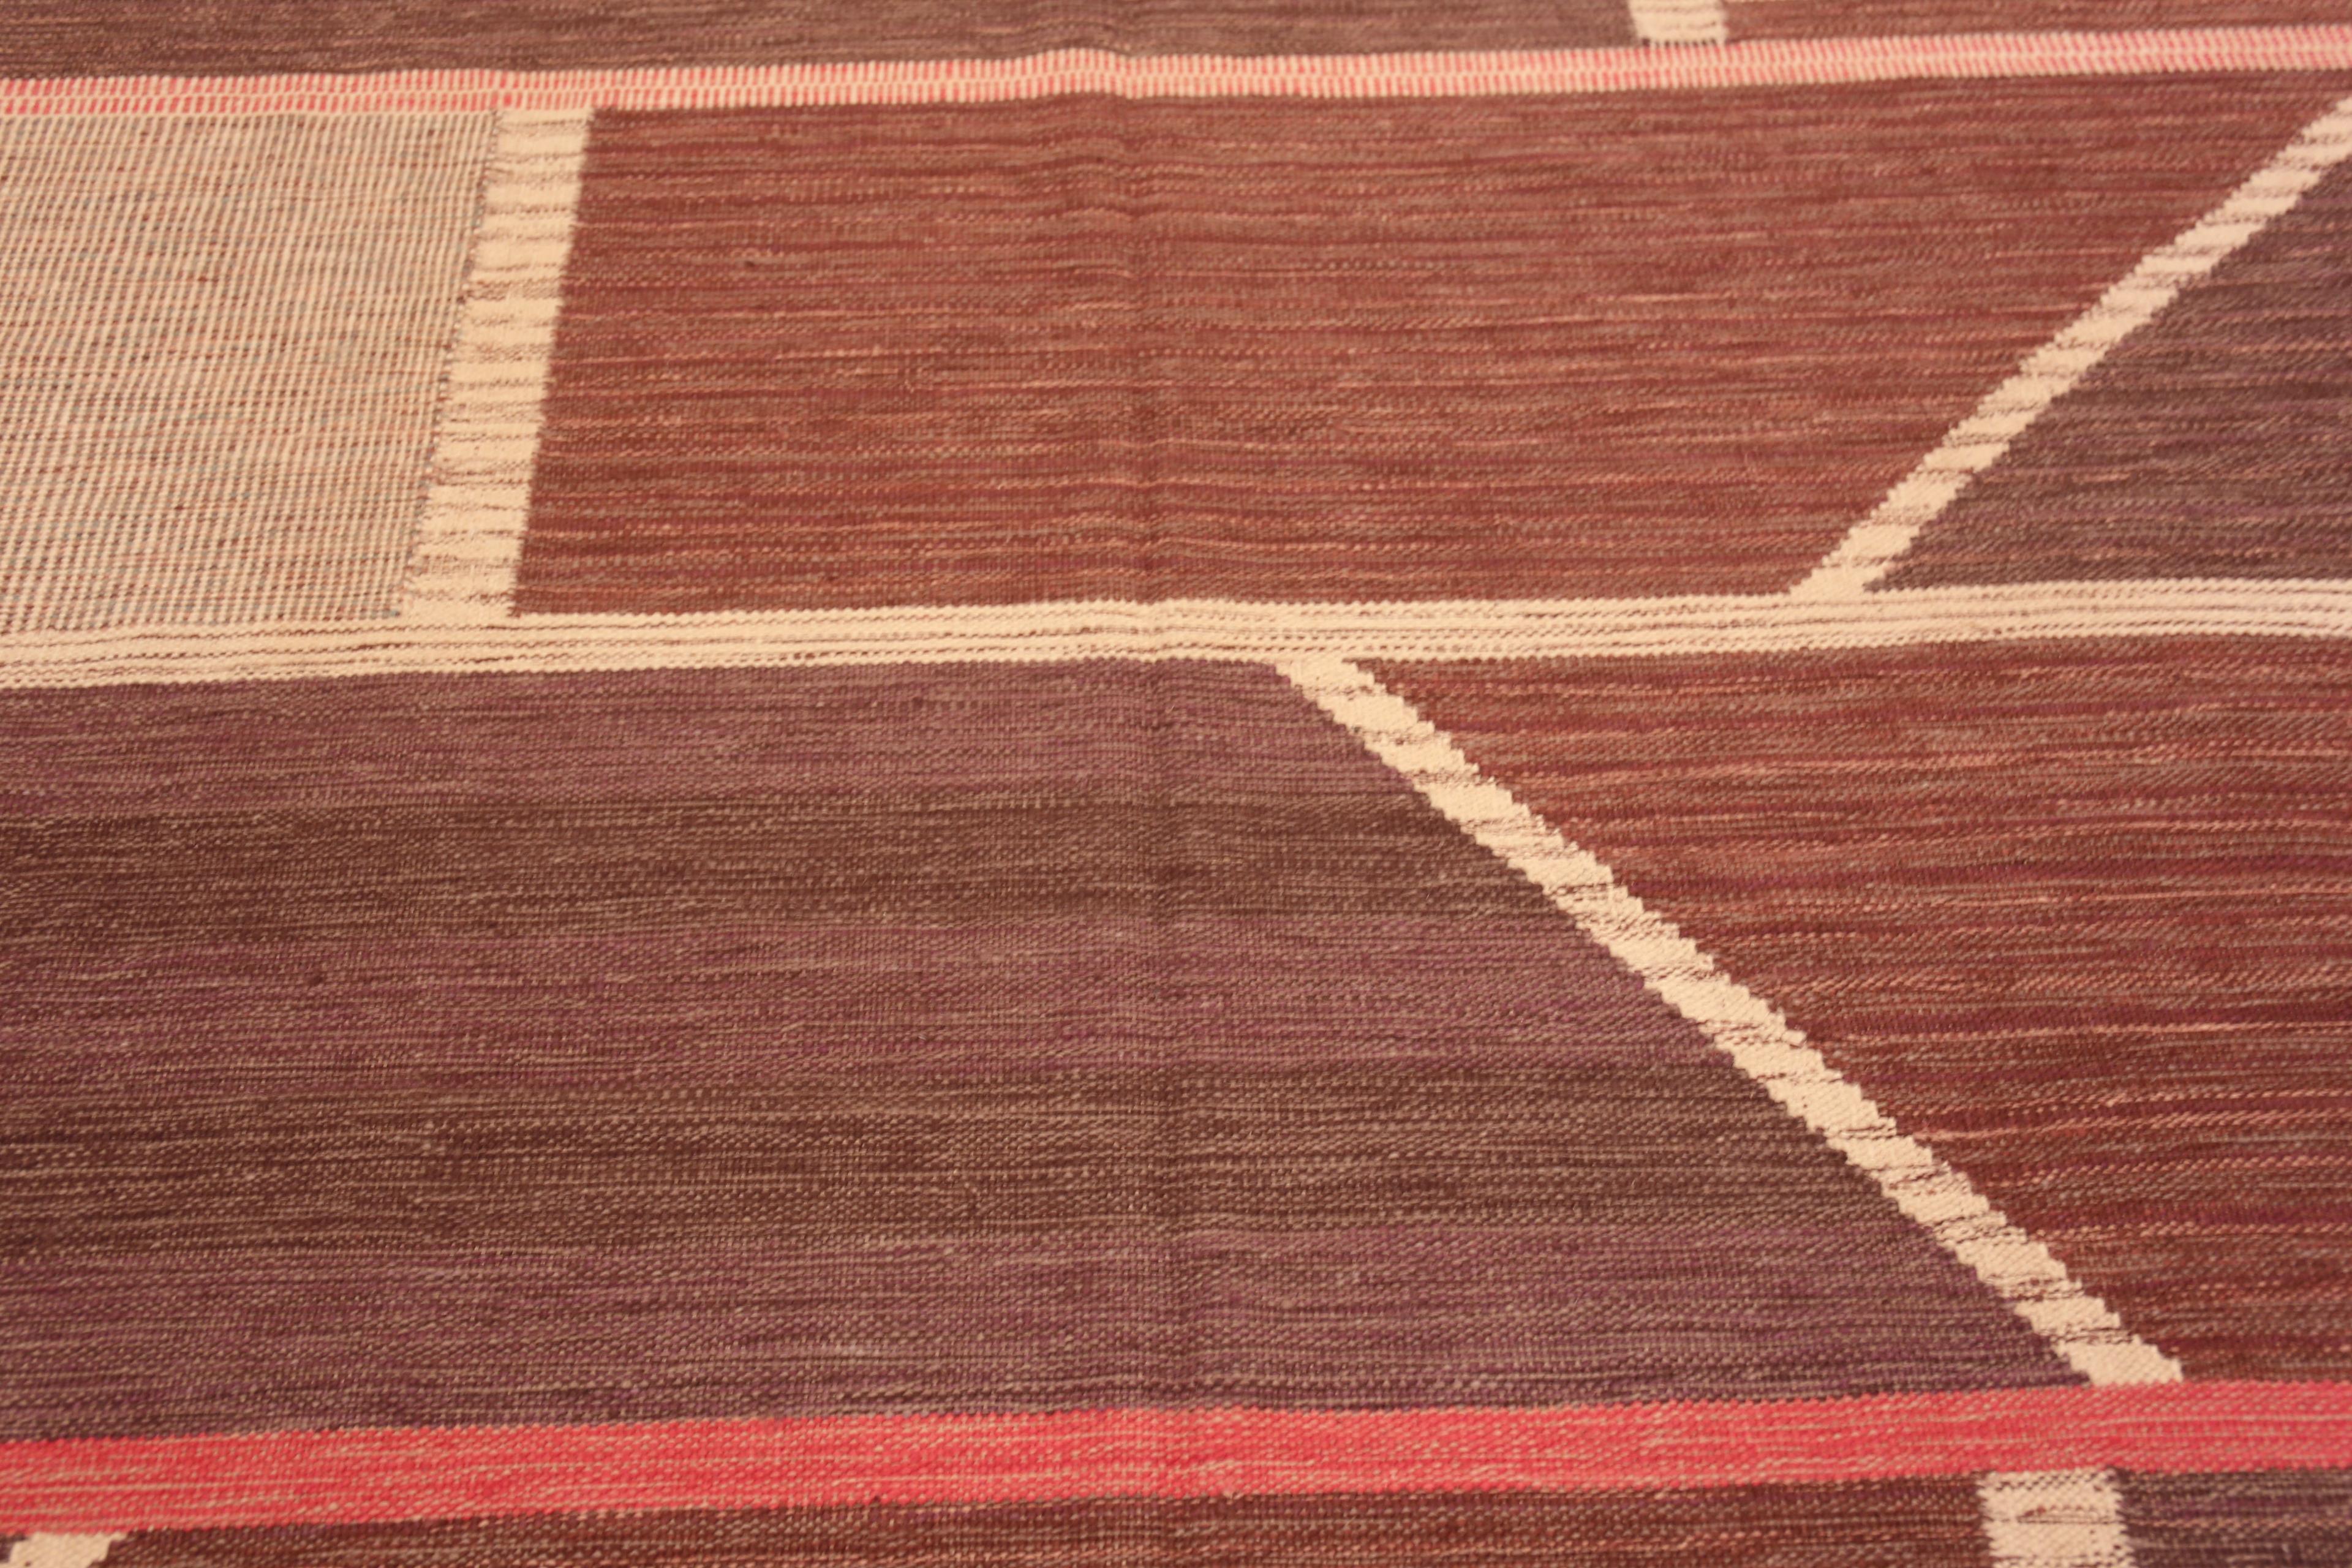 Indien Collection Nazmiyal, tapis suédois moderne et géométrique tissé à plat 8'11